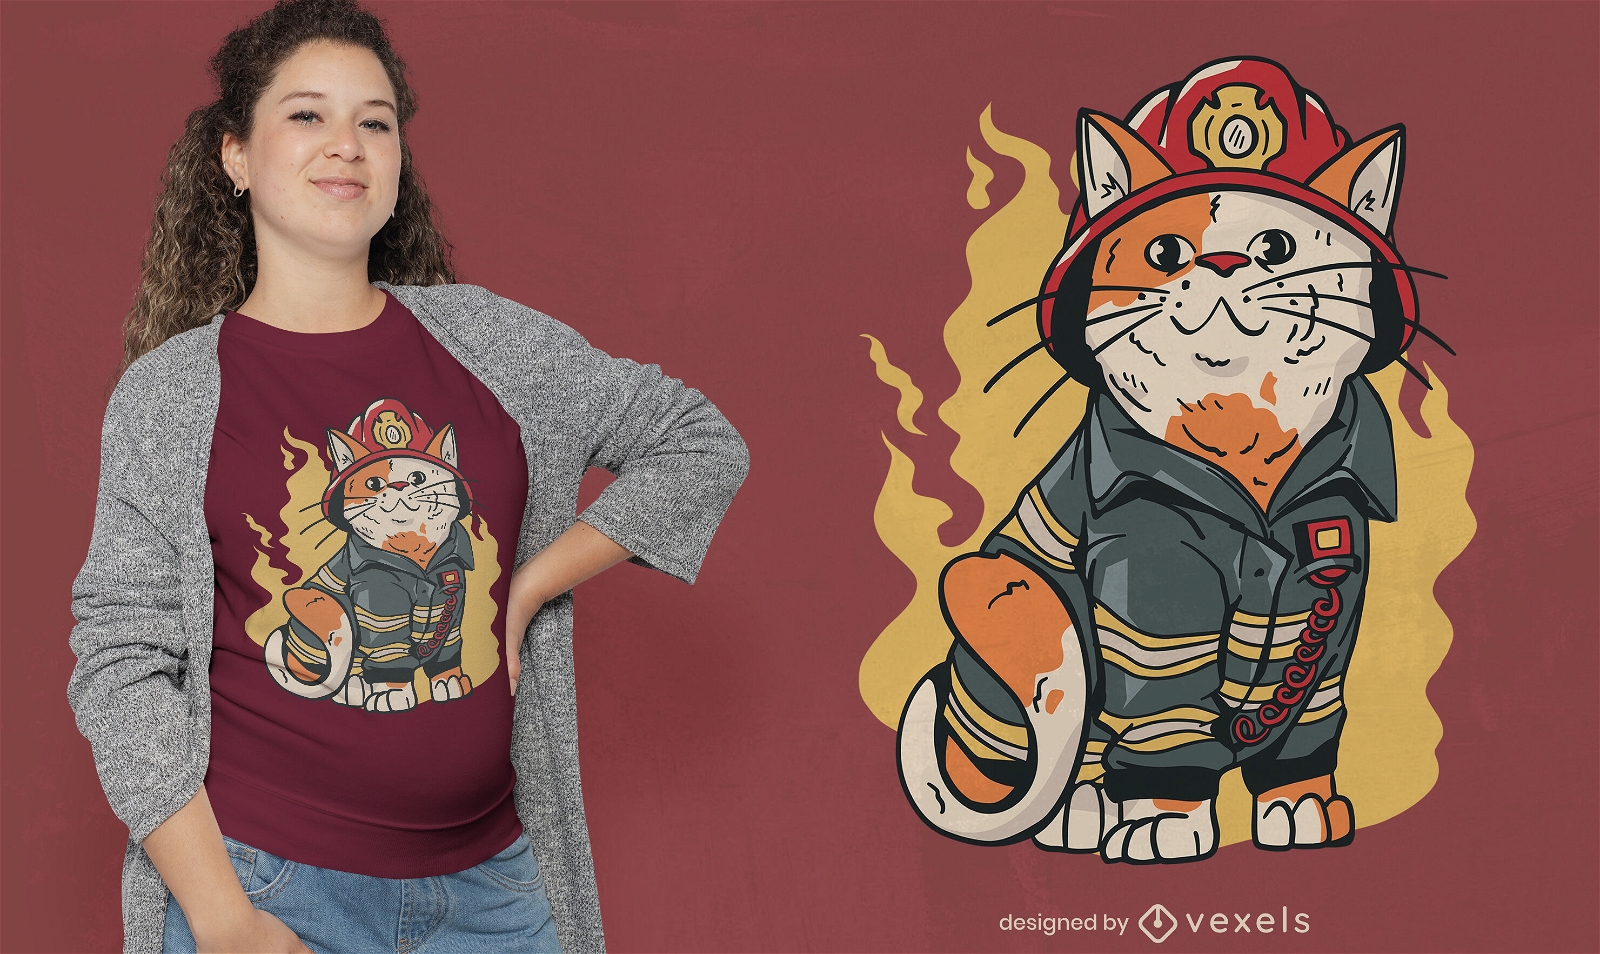 Firefighter cat t-shirt design